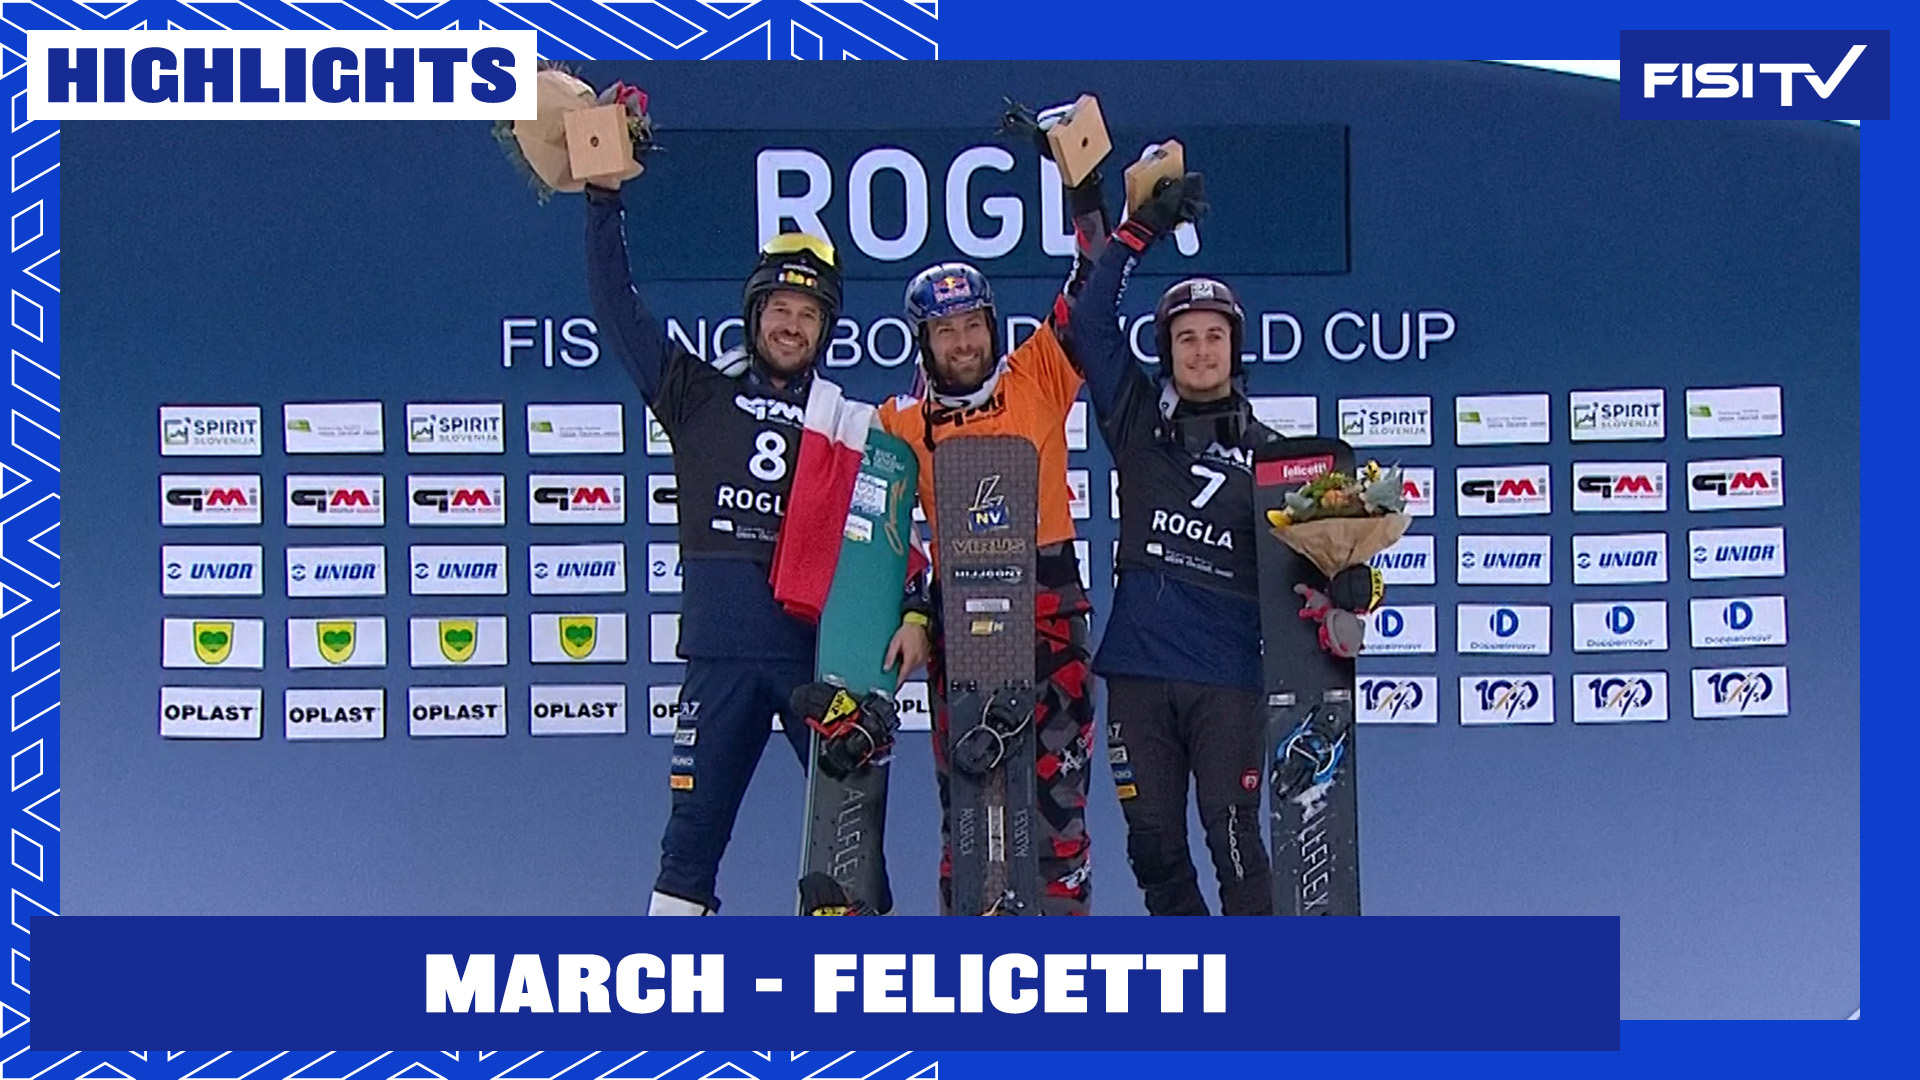 March e Felicetti salgono sul podio nel PGS di Rogla | FISI TV